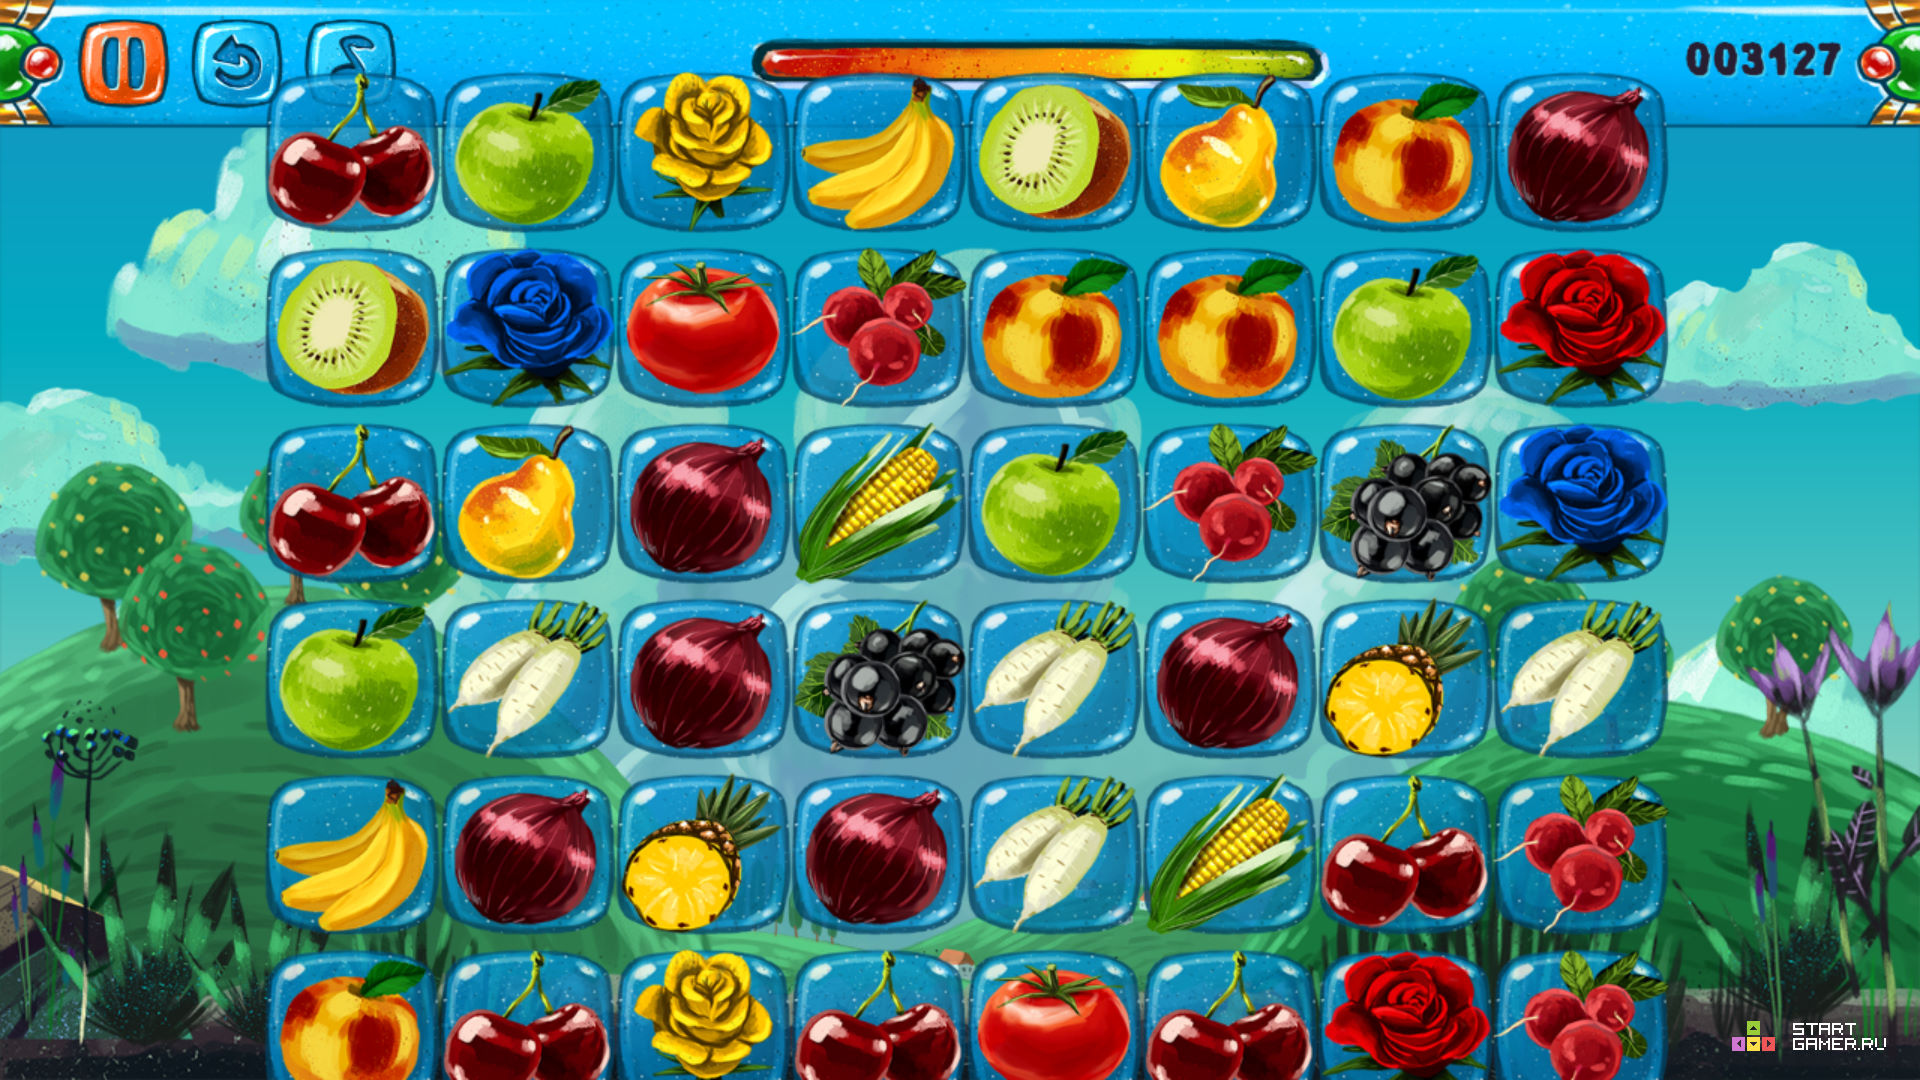 Все фрукты их блокс фрукт. В2 фрукты Блокс Фрутс. Игра Fruit connect 2. Игра Маджонг овощи и фрукты 1. Фрукты в игре Блокс Фрут.